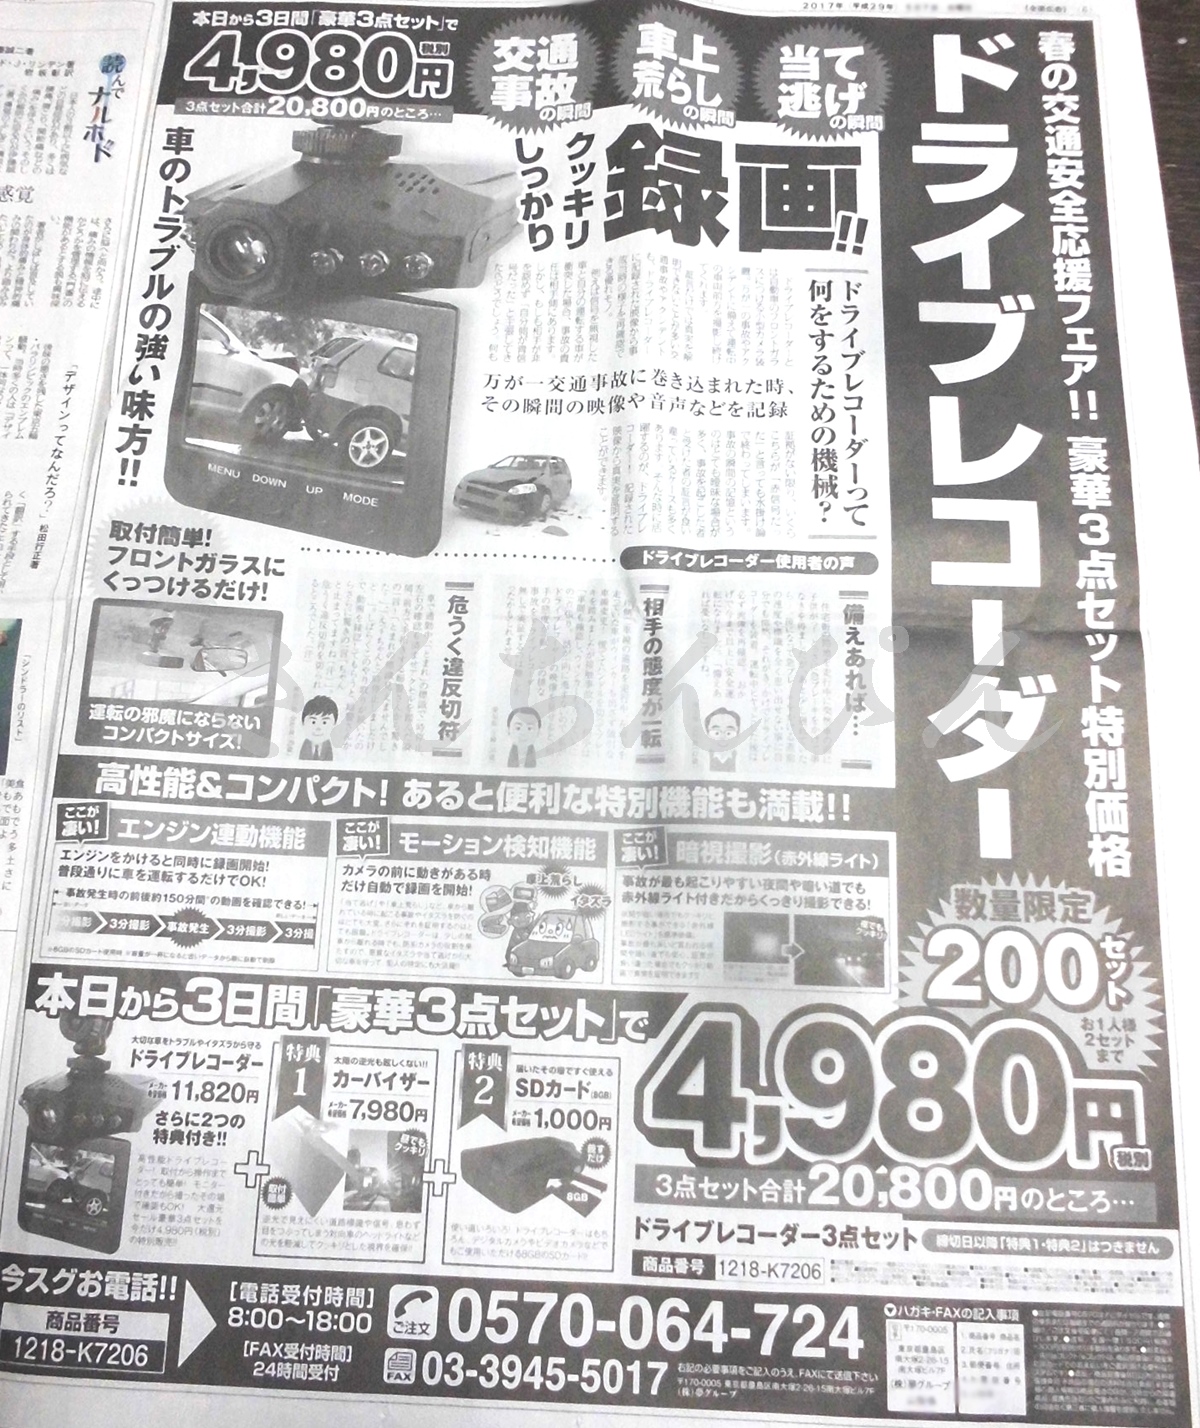 ドライブレコーダー新聞広告4980円は買いか？楽天ショップおススメ品は？